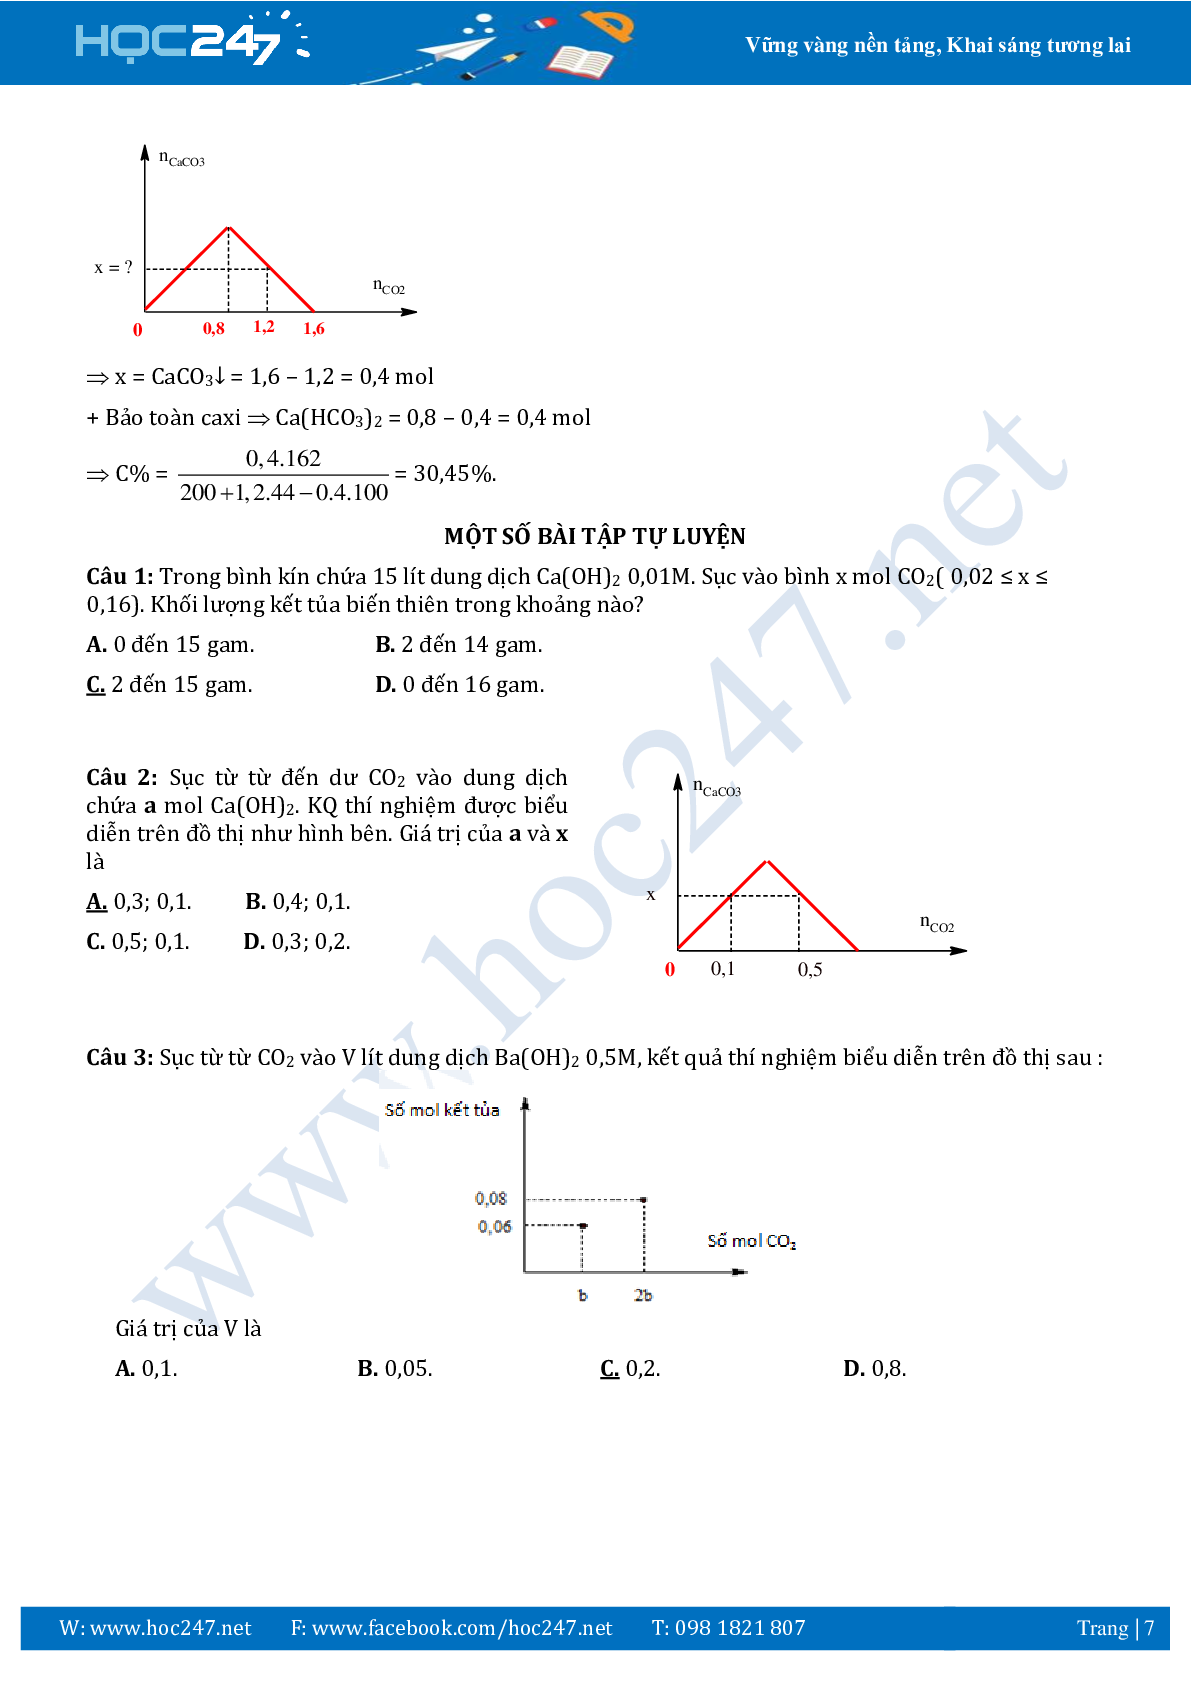 Chuyên đề sử dụng phương pháp đồ thị ôn thi THPTQG môn Hóa học (trang 7)